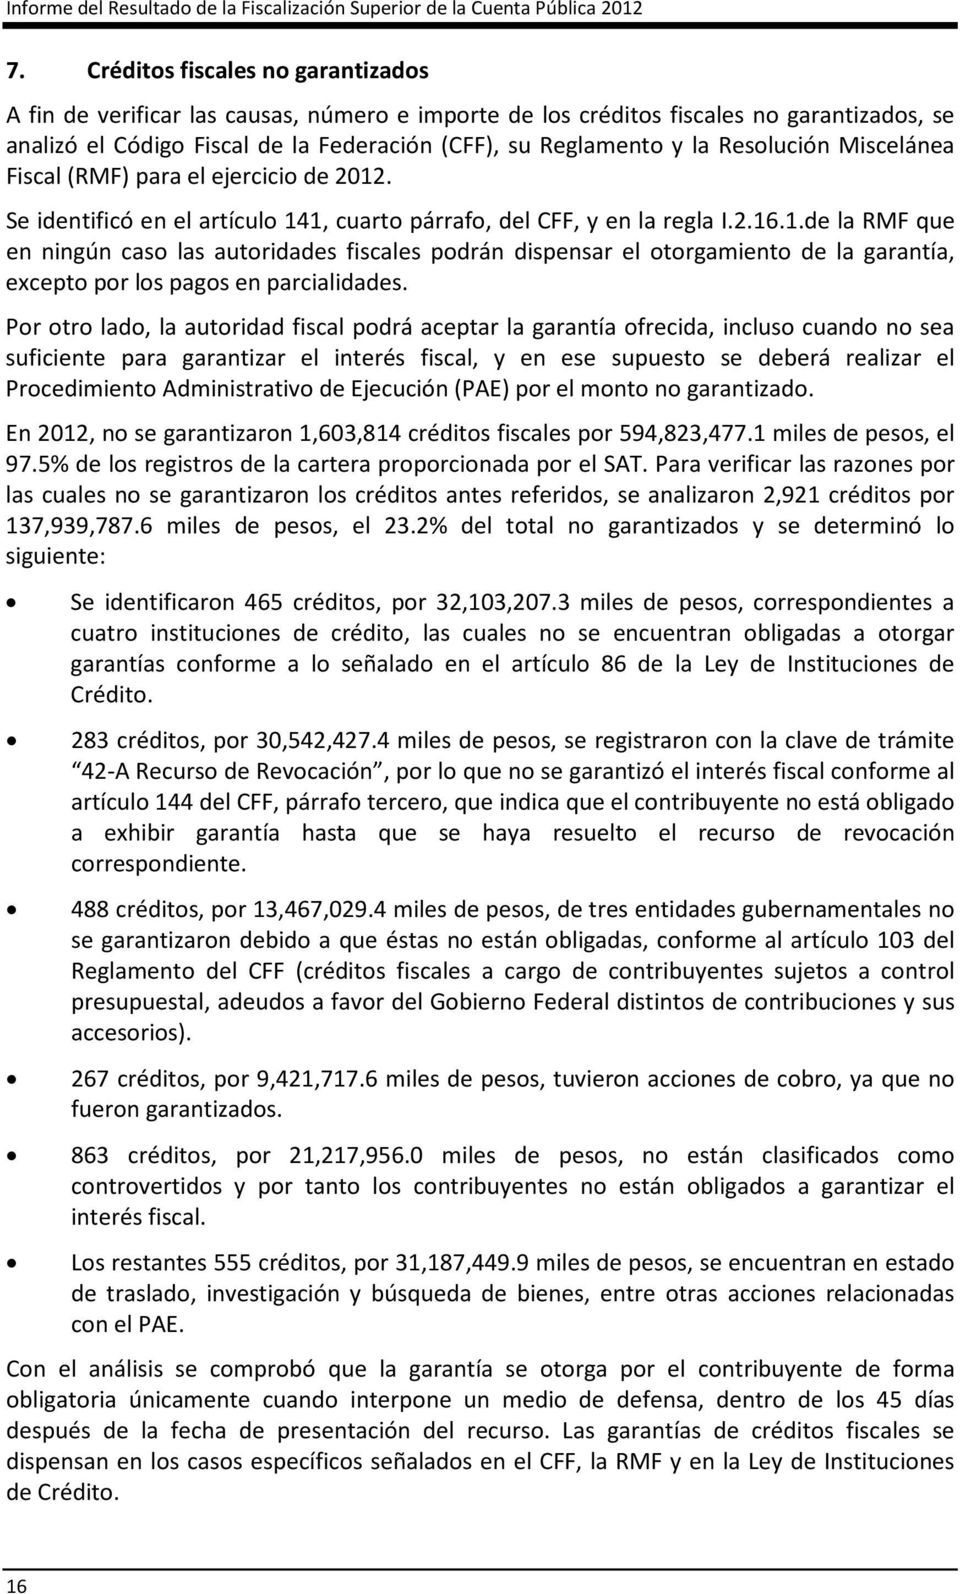 Resolución Miscelánea Fiscal (RMF) para el ejercicio de 2012